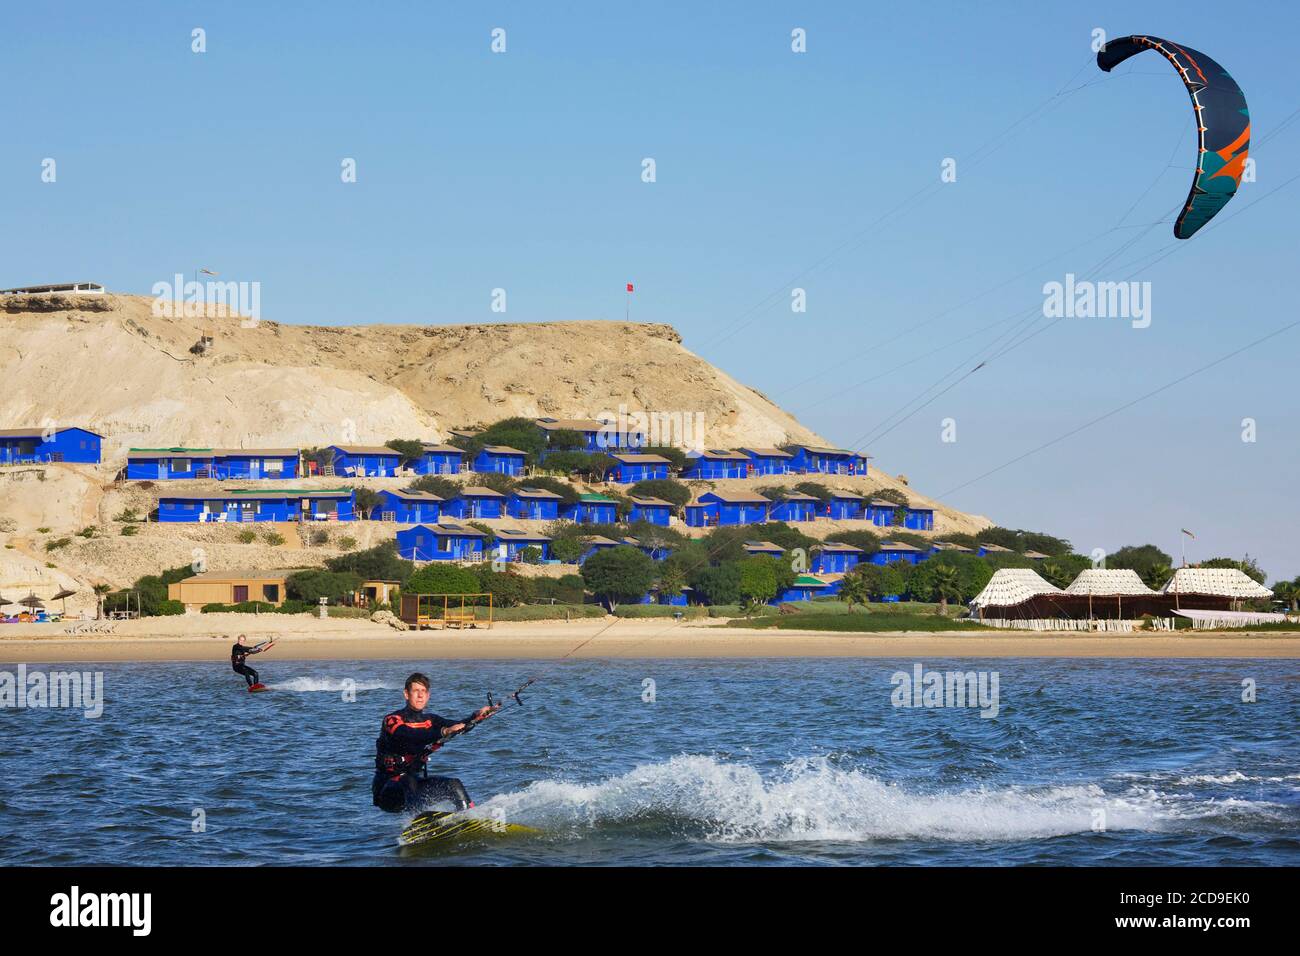 Marruecos, Sáhara Occidental, Dakhla, kitesurfer en la laguna con kite Camp actitud de Dakhla en el fondo Foto de stock